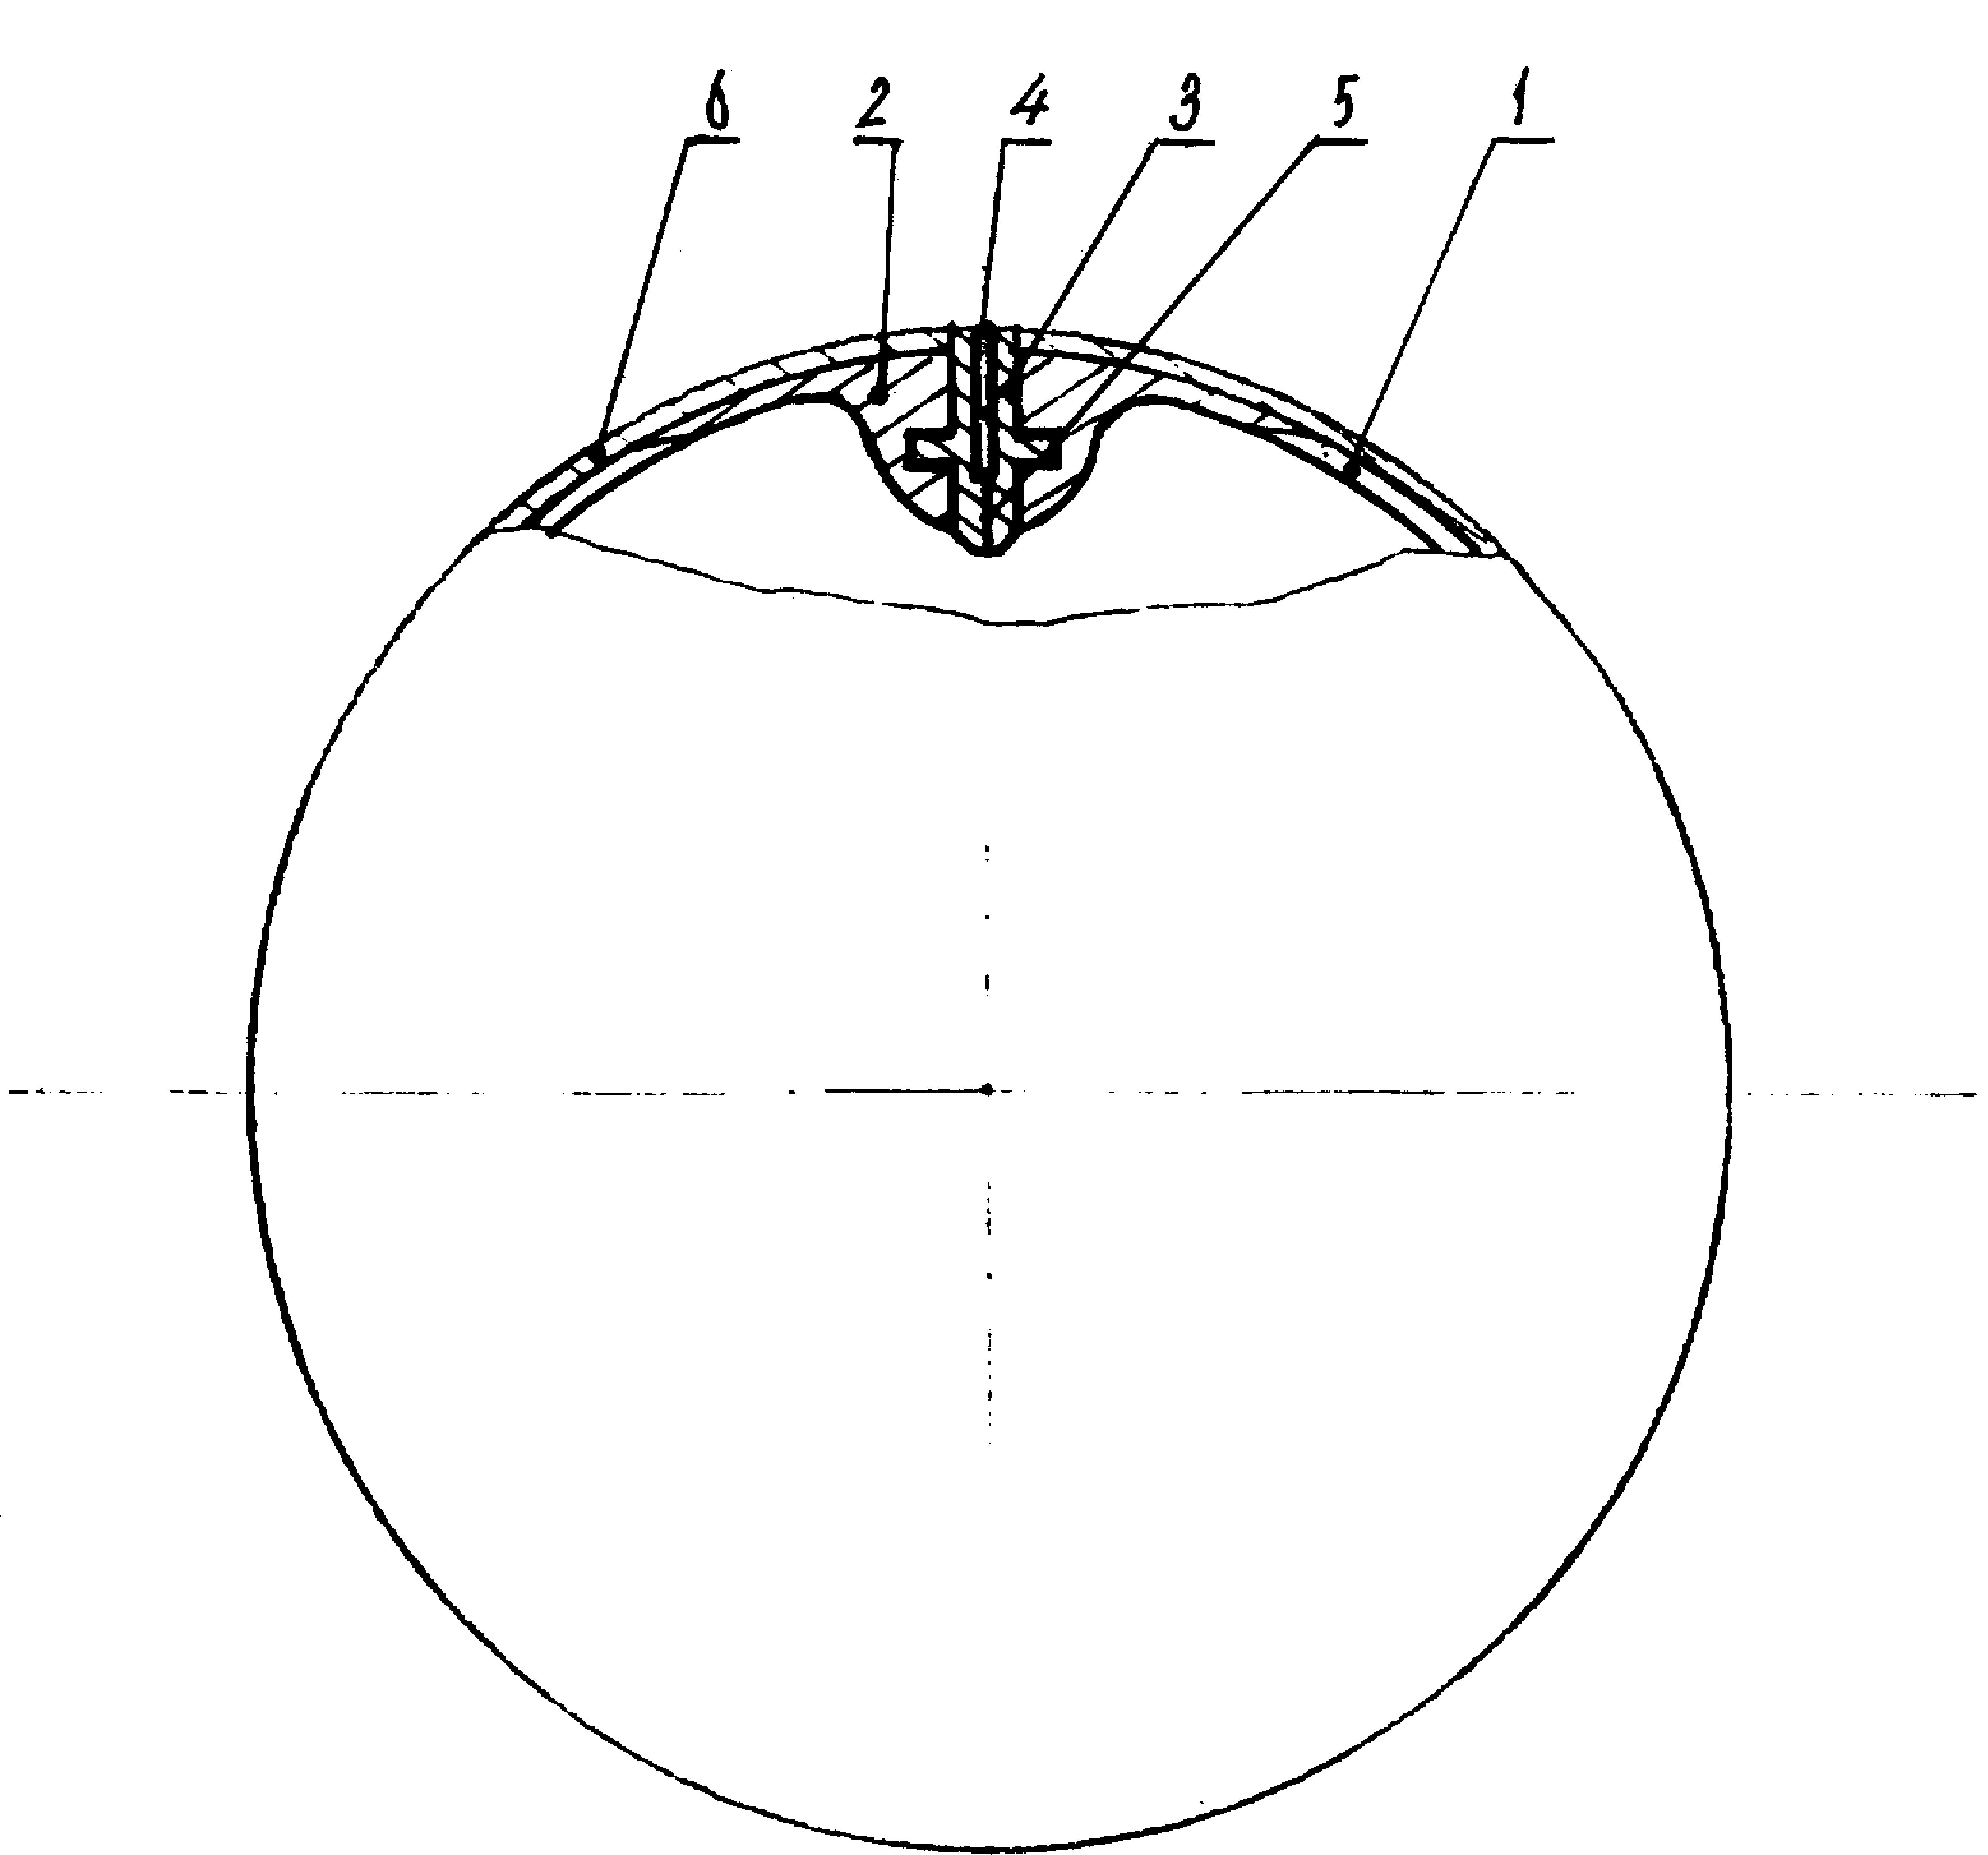 由球胆,球嘴和球壳构成,球胆为圆球形充气囊,由乳胶制成,其内壁上带有